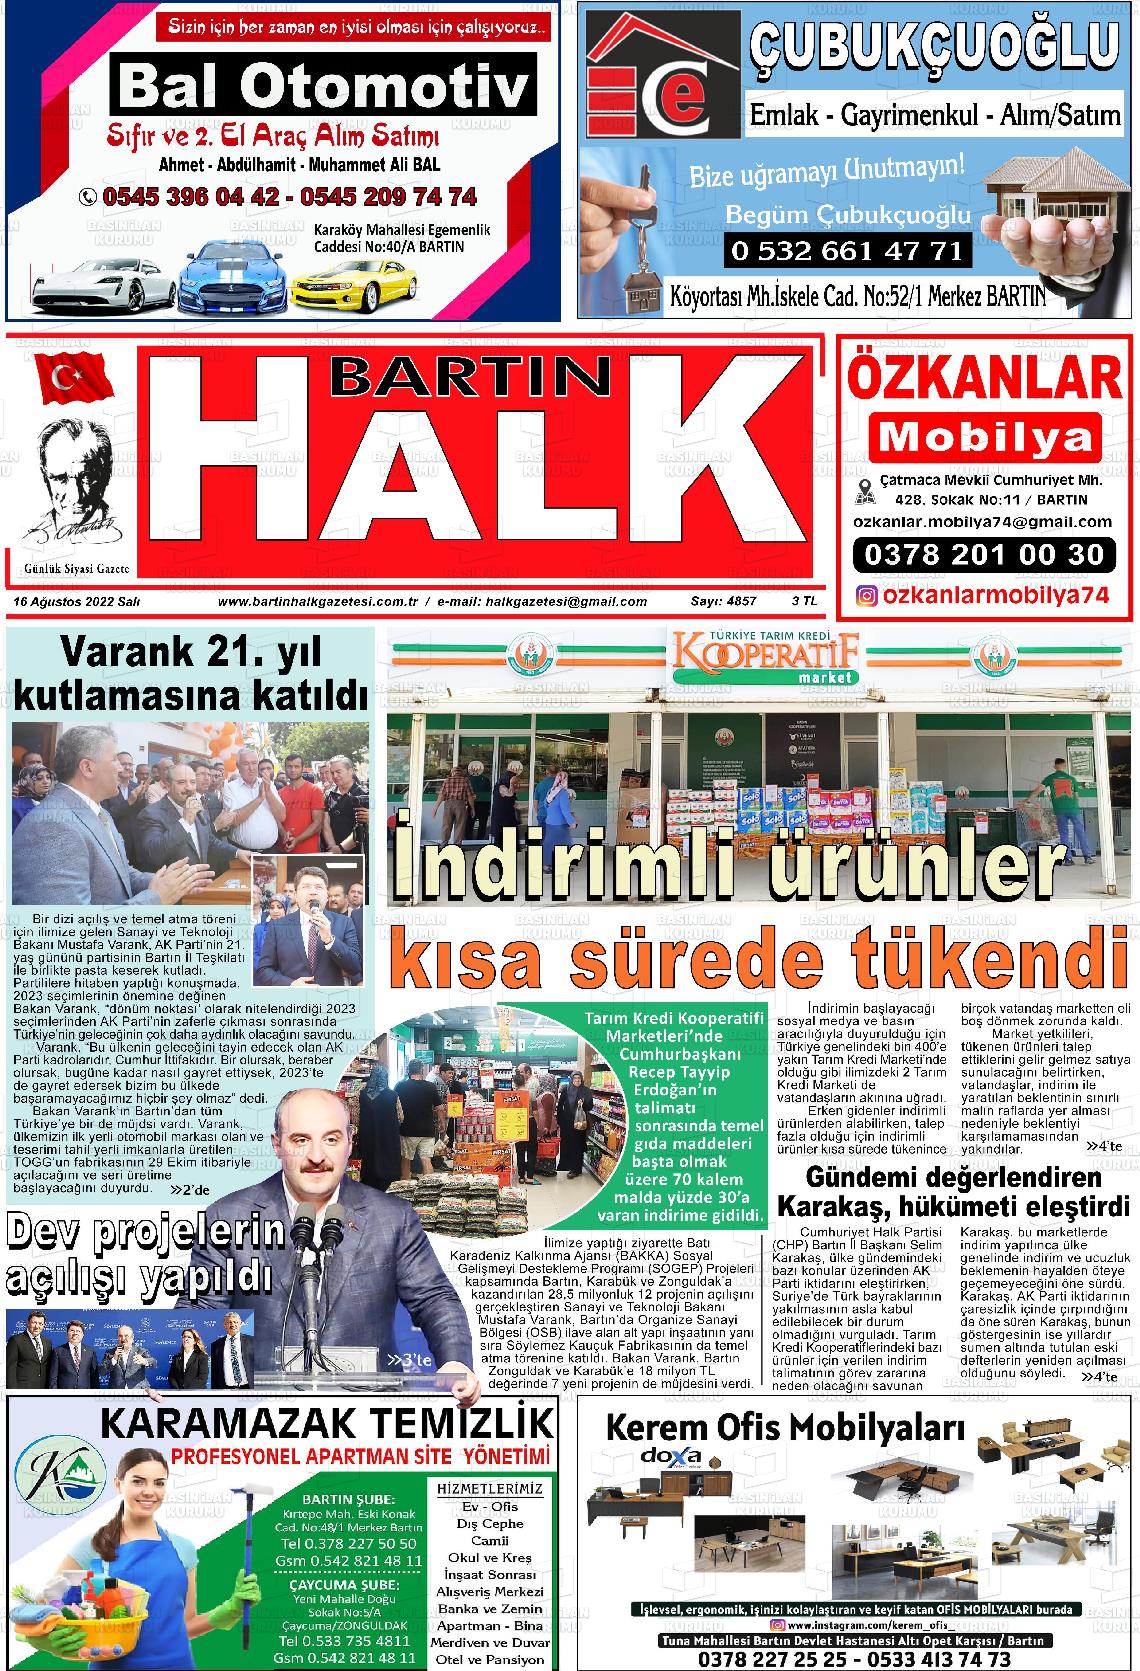 16 Ağustos 2022 Bartın Halk Gazete Manşeti